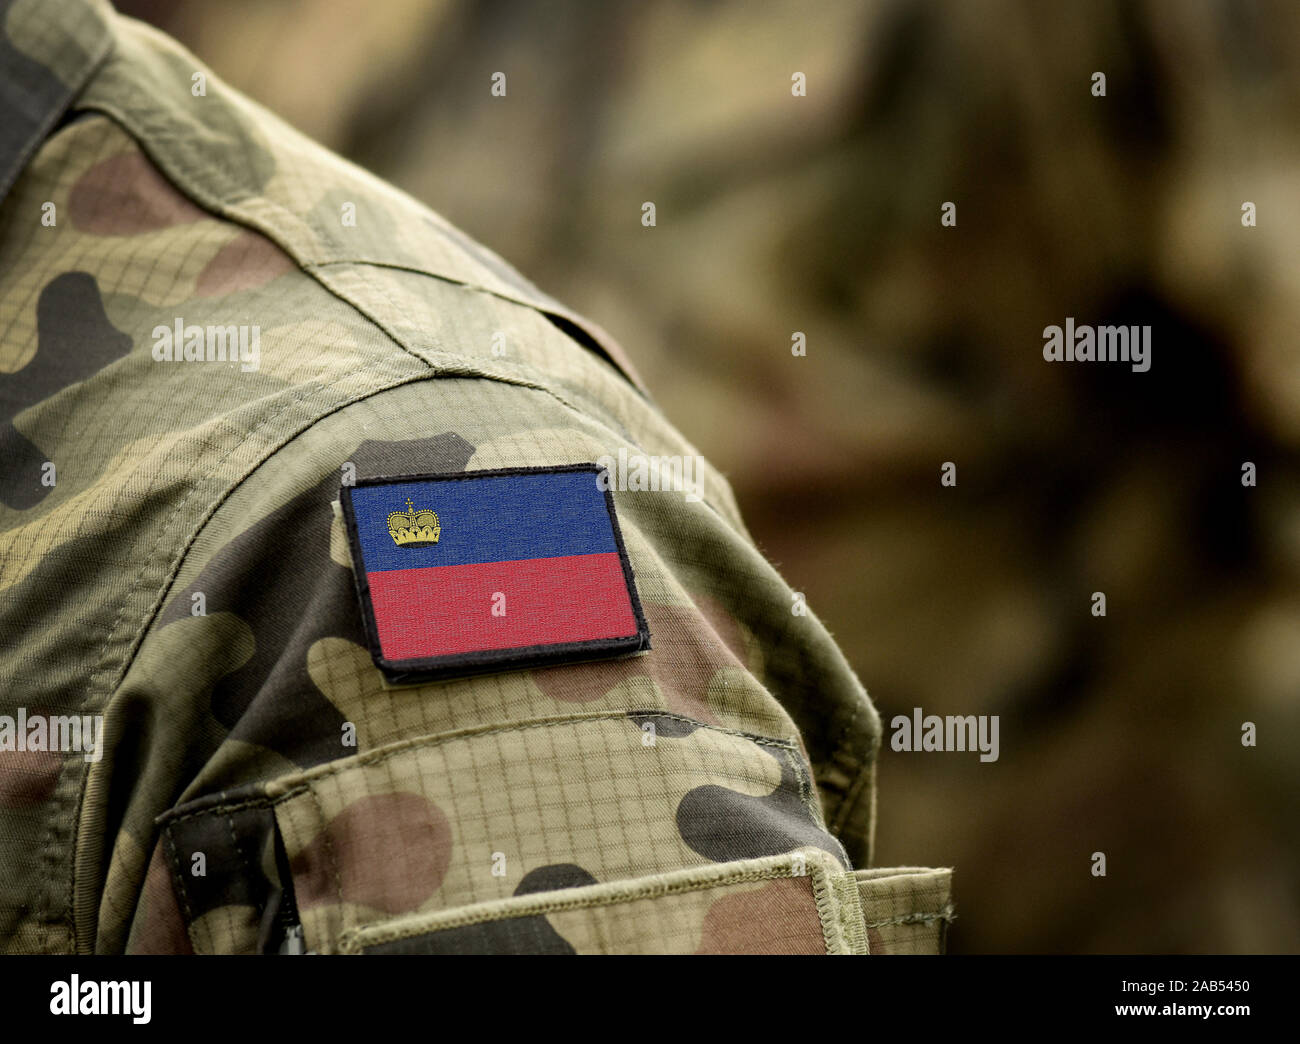 Flagge Liechtensteins zur Uniform. Armee, Soldaten. Collage. Stockfoto